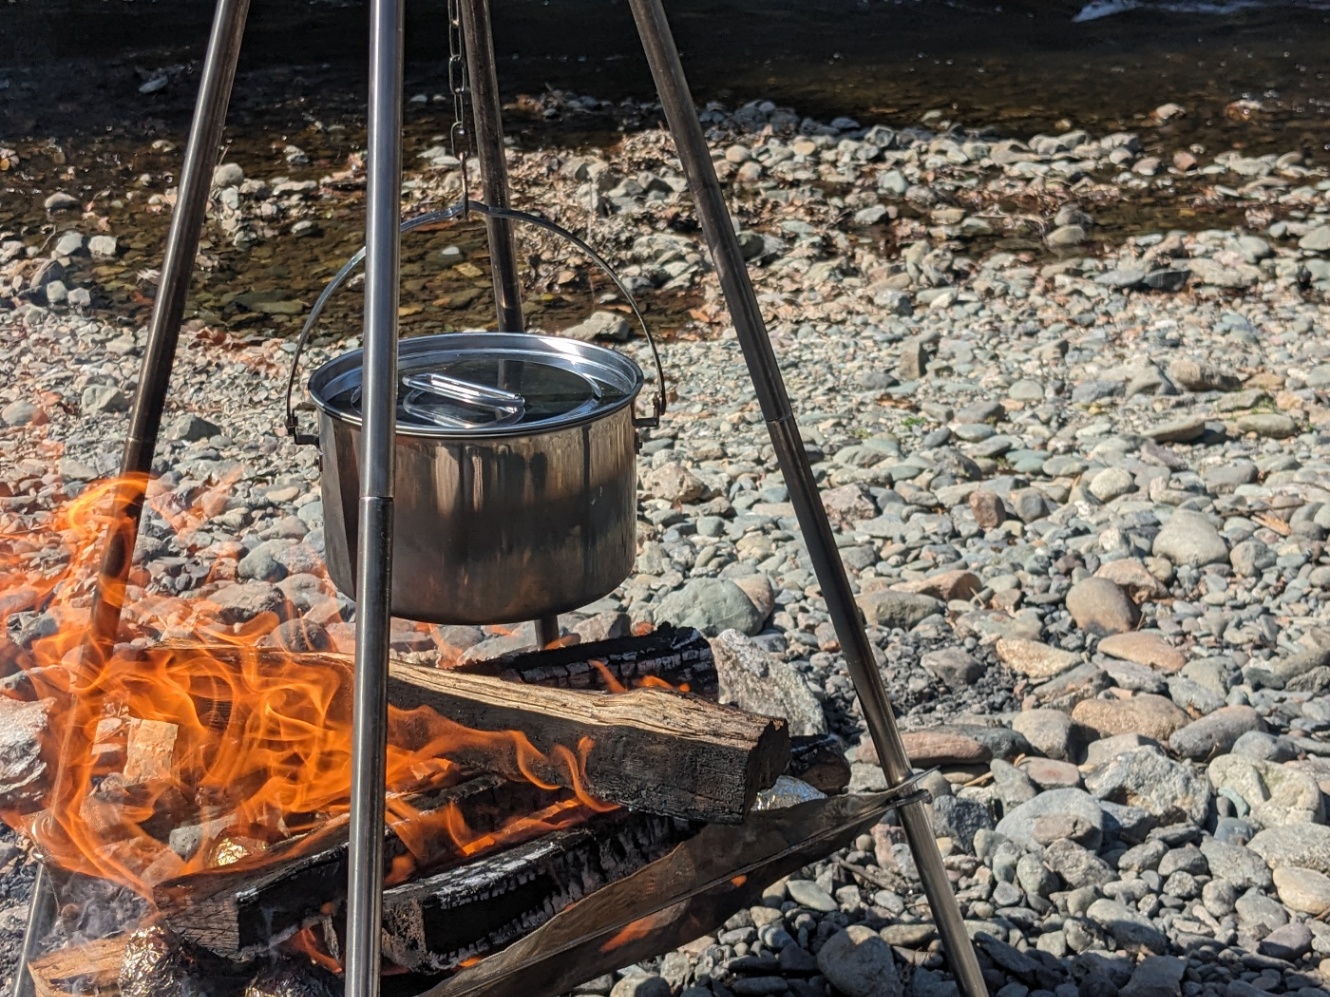 河原に立てたトライポッドに鍋を吊るして焚き火でお湯を沸かしている様子